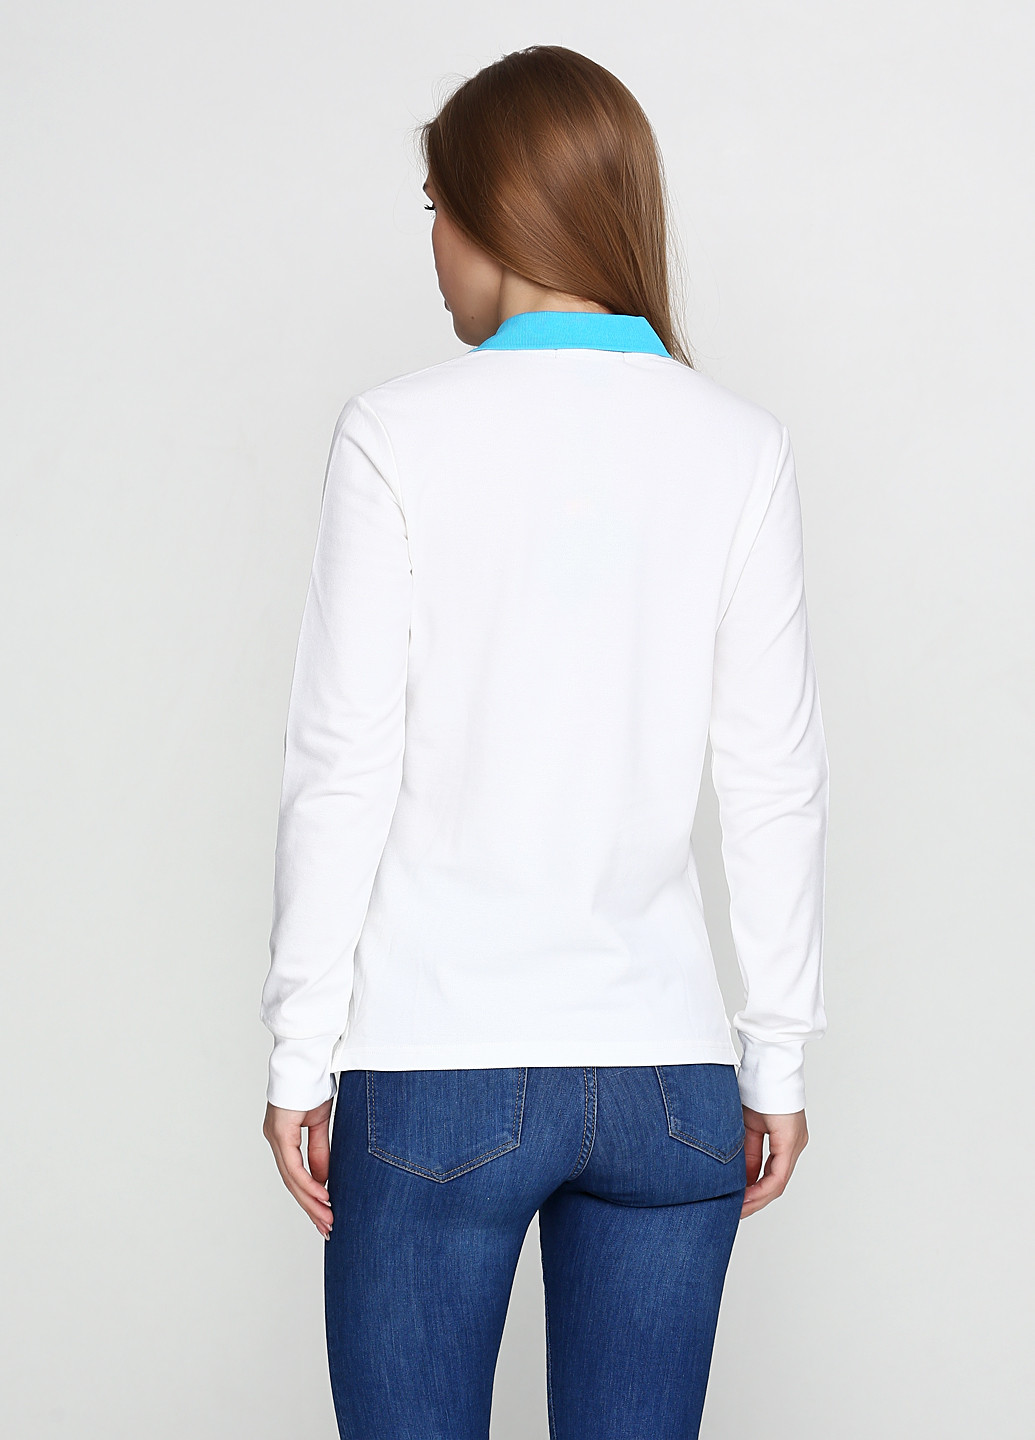 Белая женская футболка-поло Ralph Lauren с логотипом